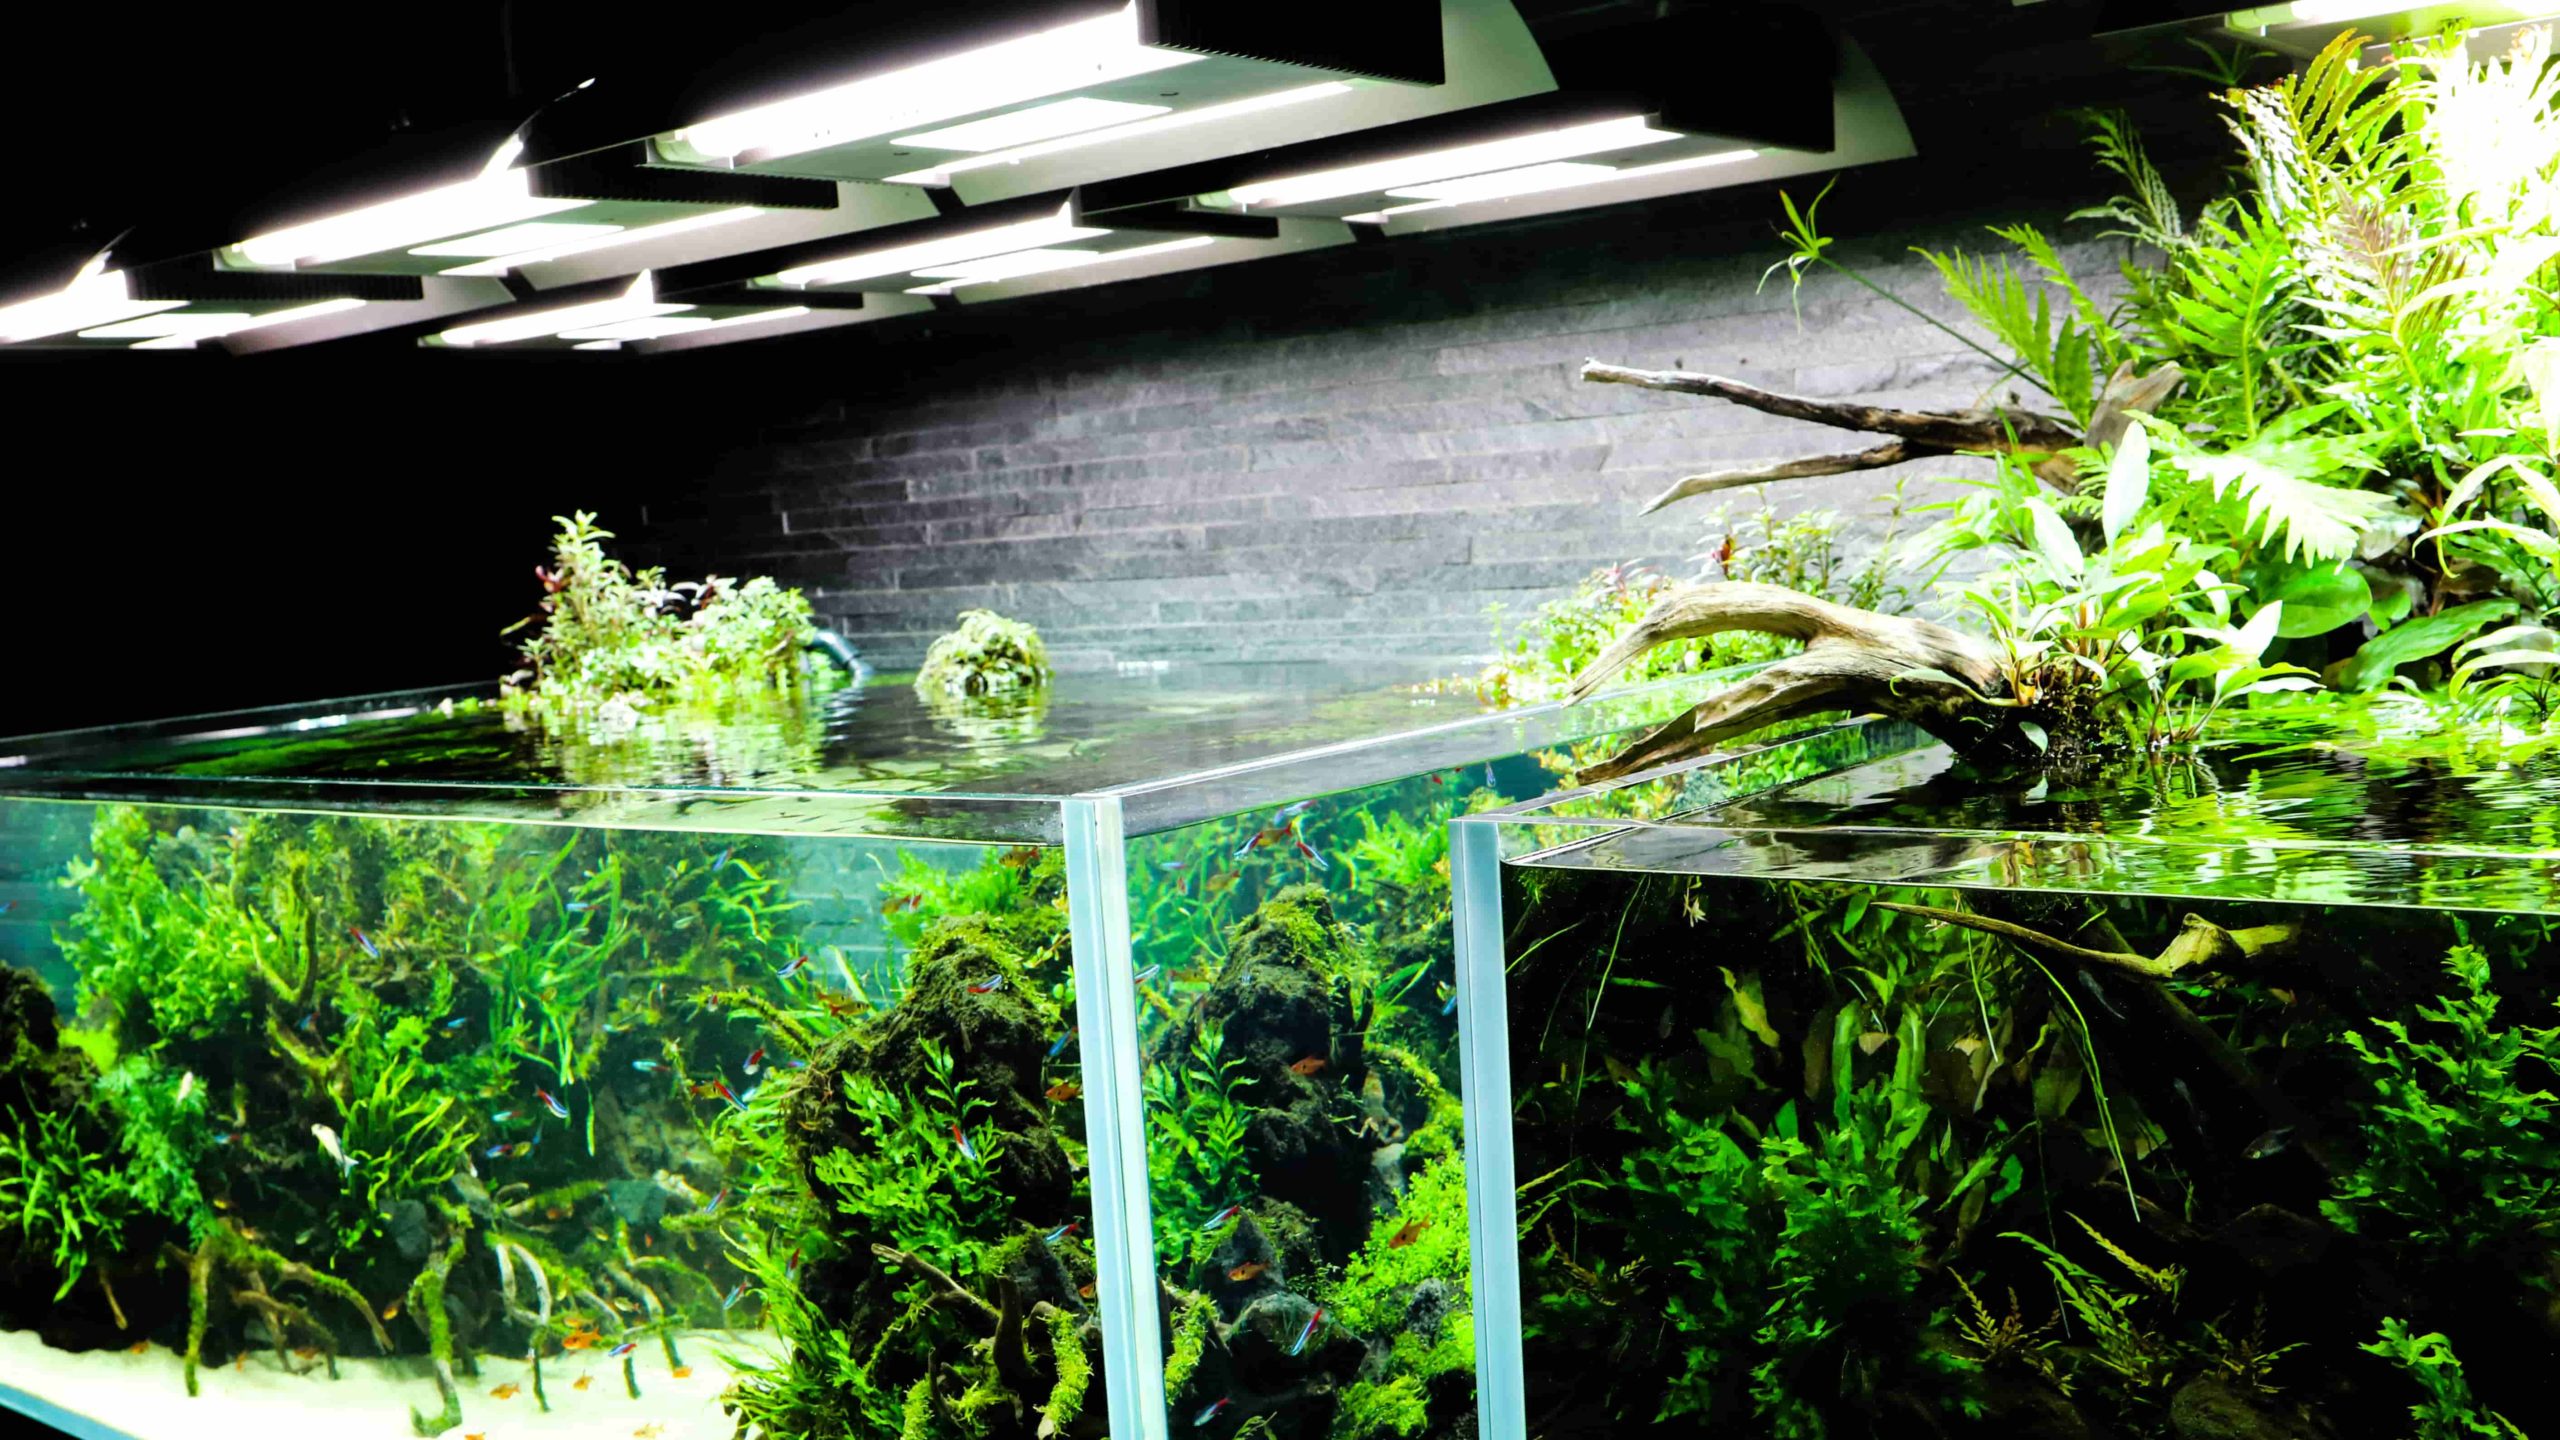 照明 Led 蛍光灯 メタルハライドランプ の特徴やメリット デメリット を解説 初級編 Aquariumbreedmanual アクアリウムブリードマニュアル